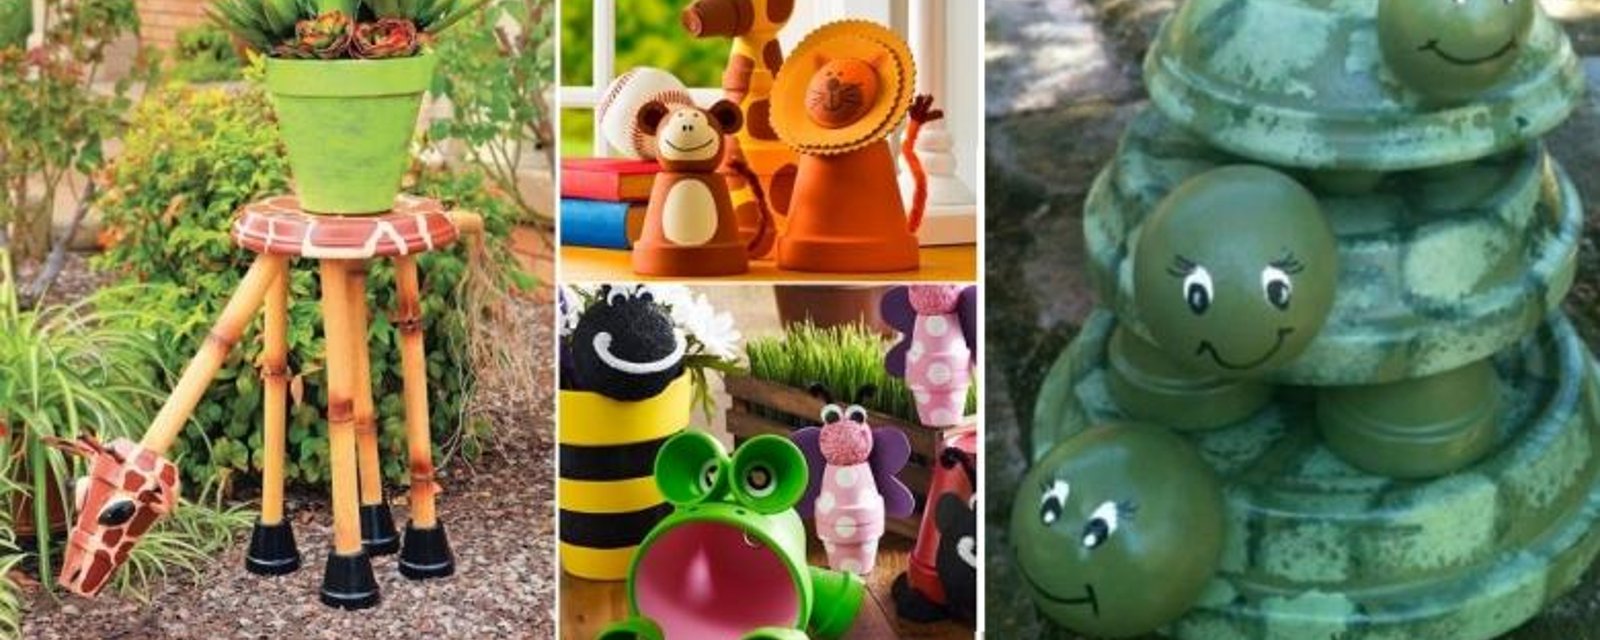 22 modèles d'animaux à bricoler en pot de terre cuite, pour décorer le jardin! 